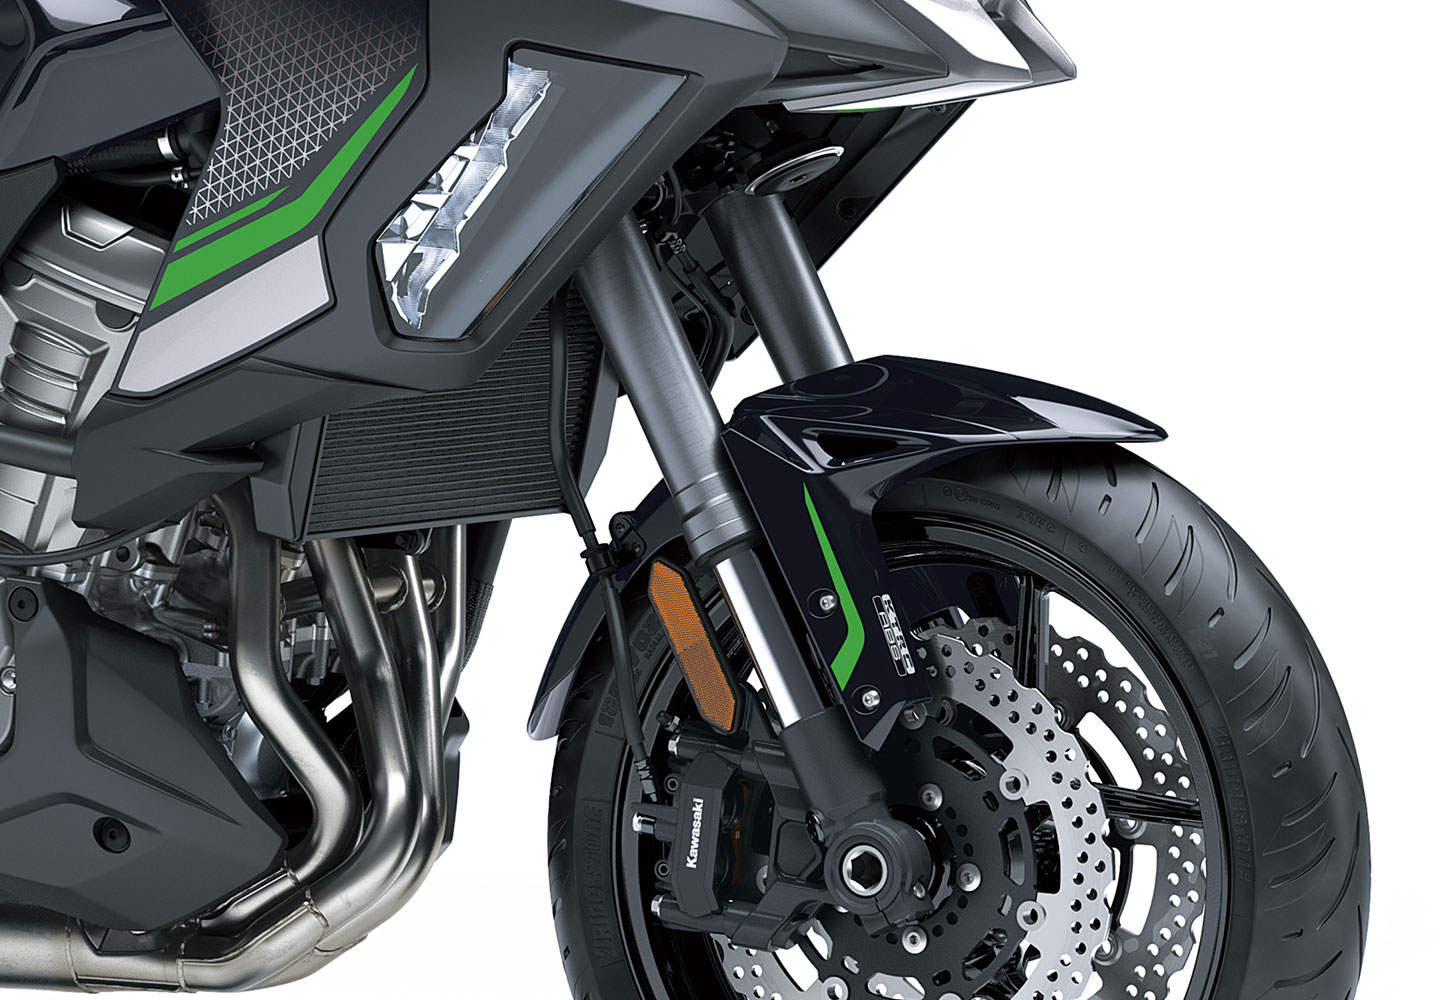 Kawasaki VERSYS 1000 | ツーリングモデル |高い走行性能と快適性能を融合